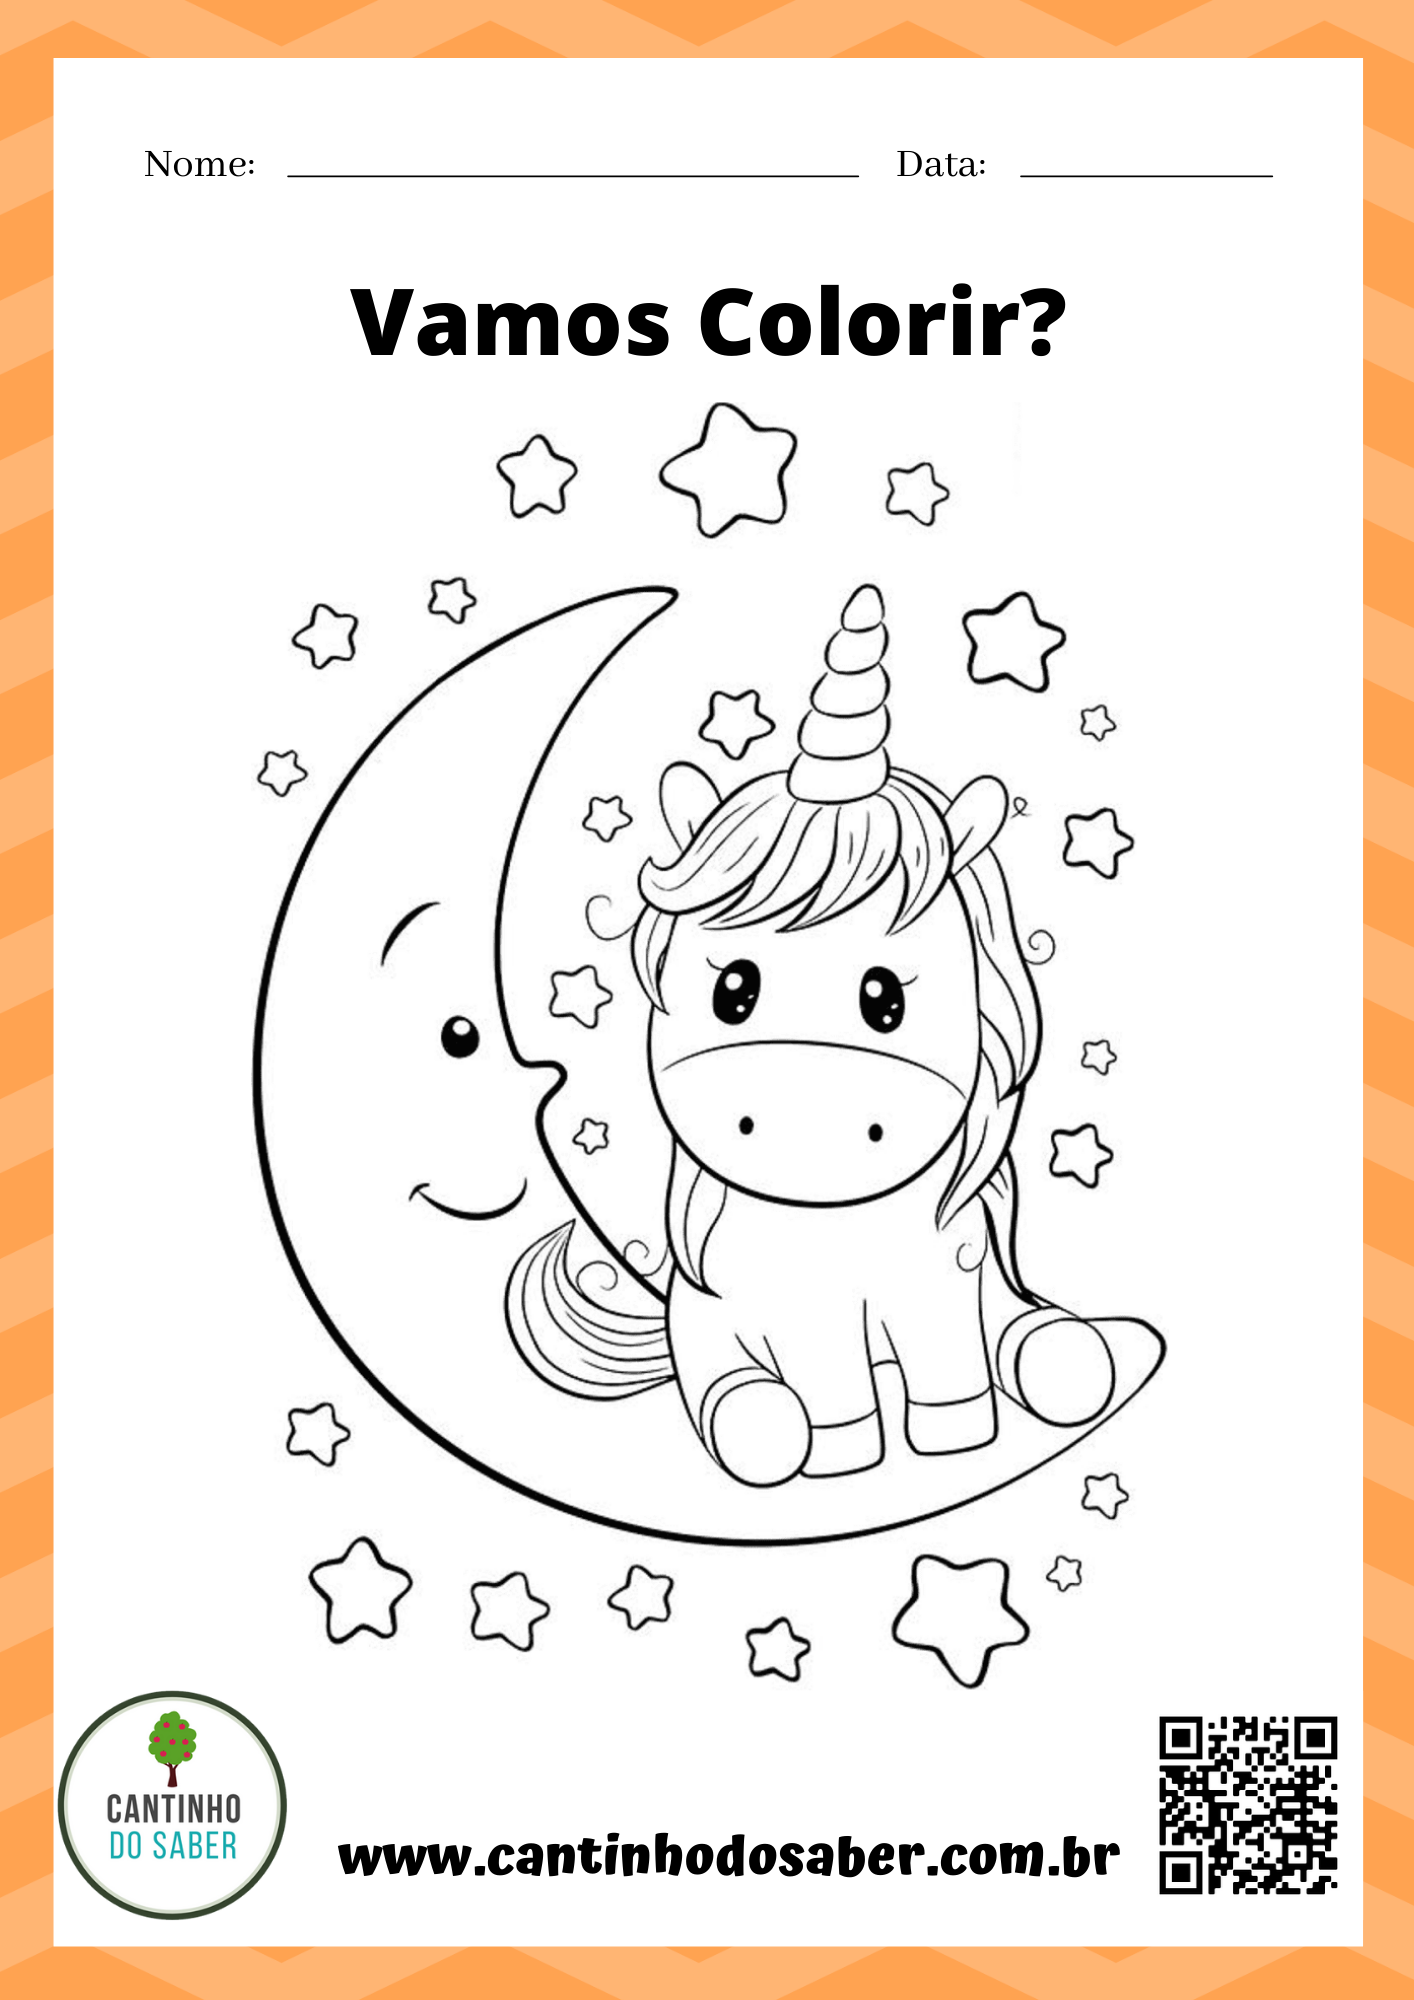 Atividades de desenhos para educação infantil colorir